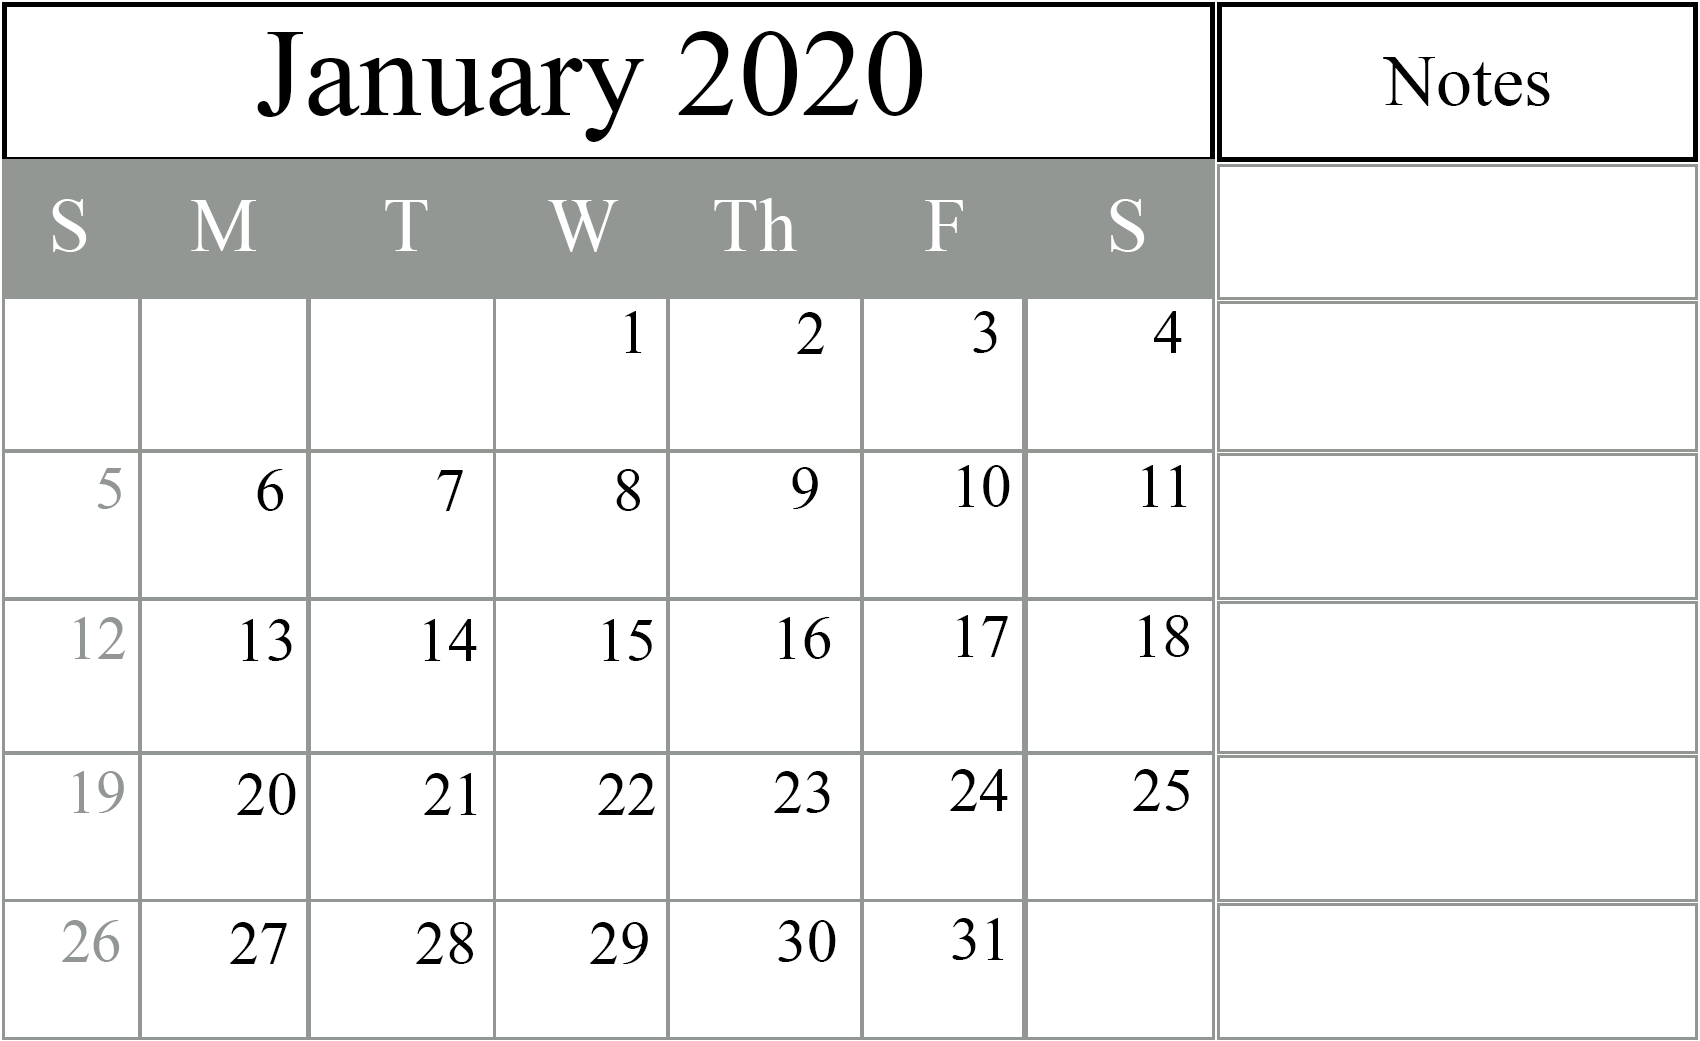 January 2020 Editable Calendar with Notes